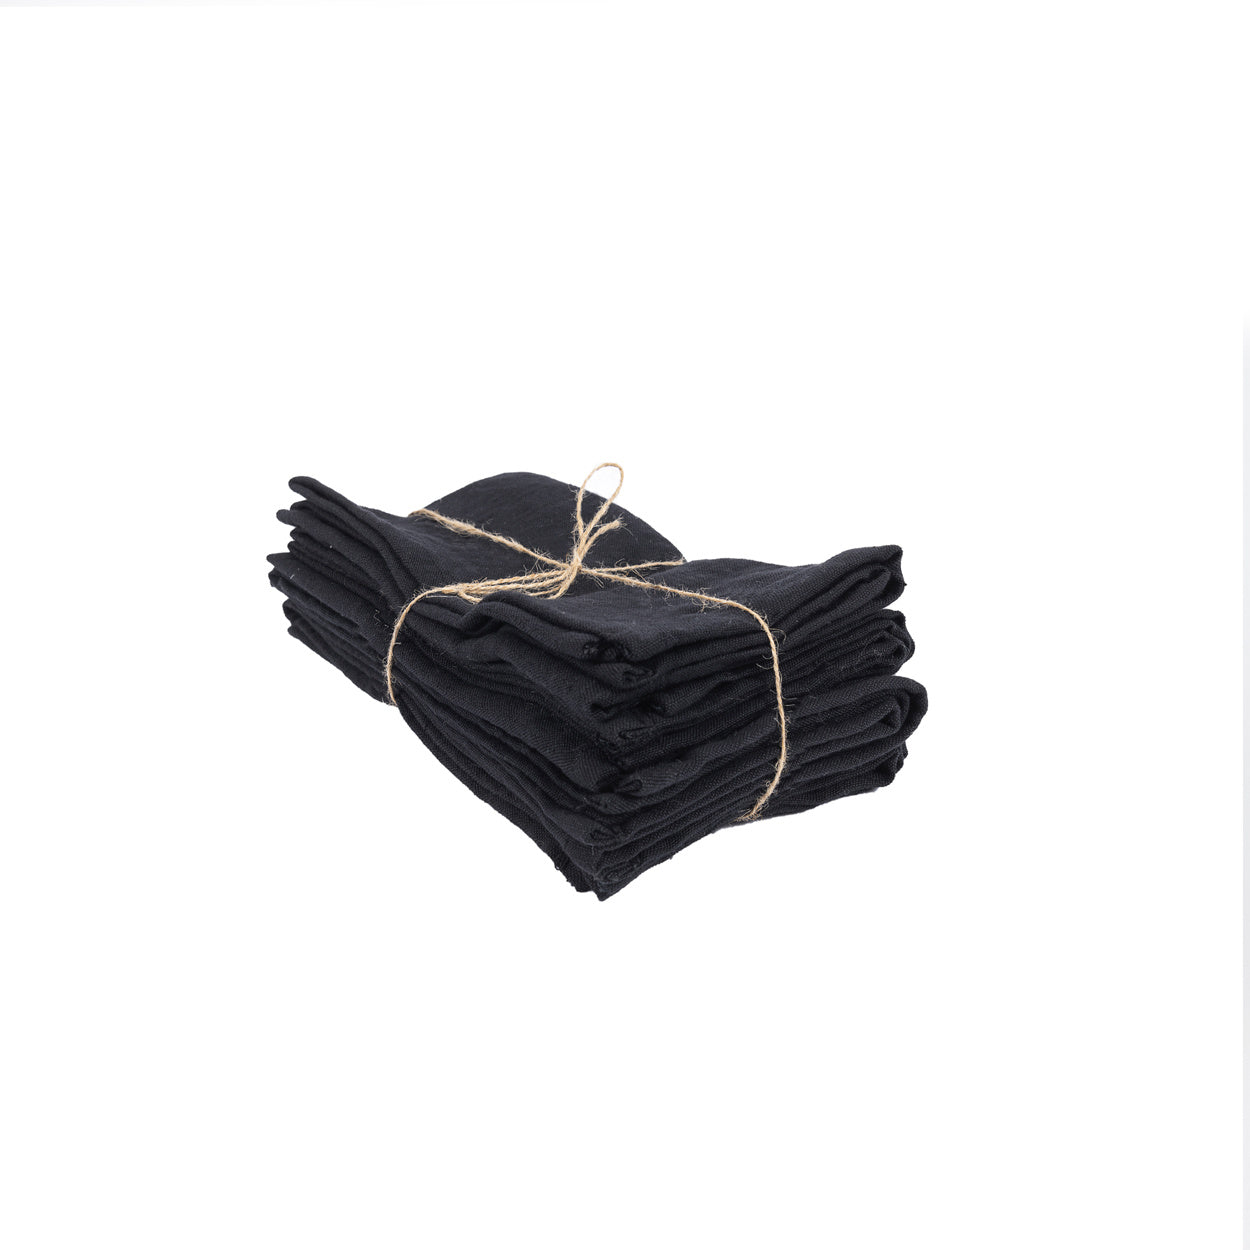 Serviettes de table noires en lin - Set de 4Maison Bloom Concept 